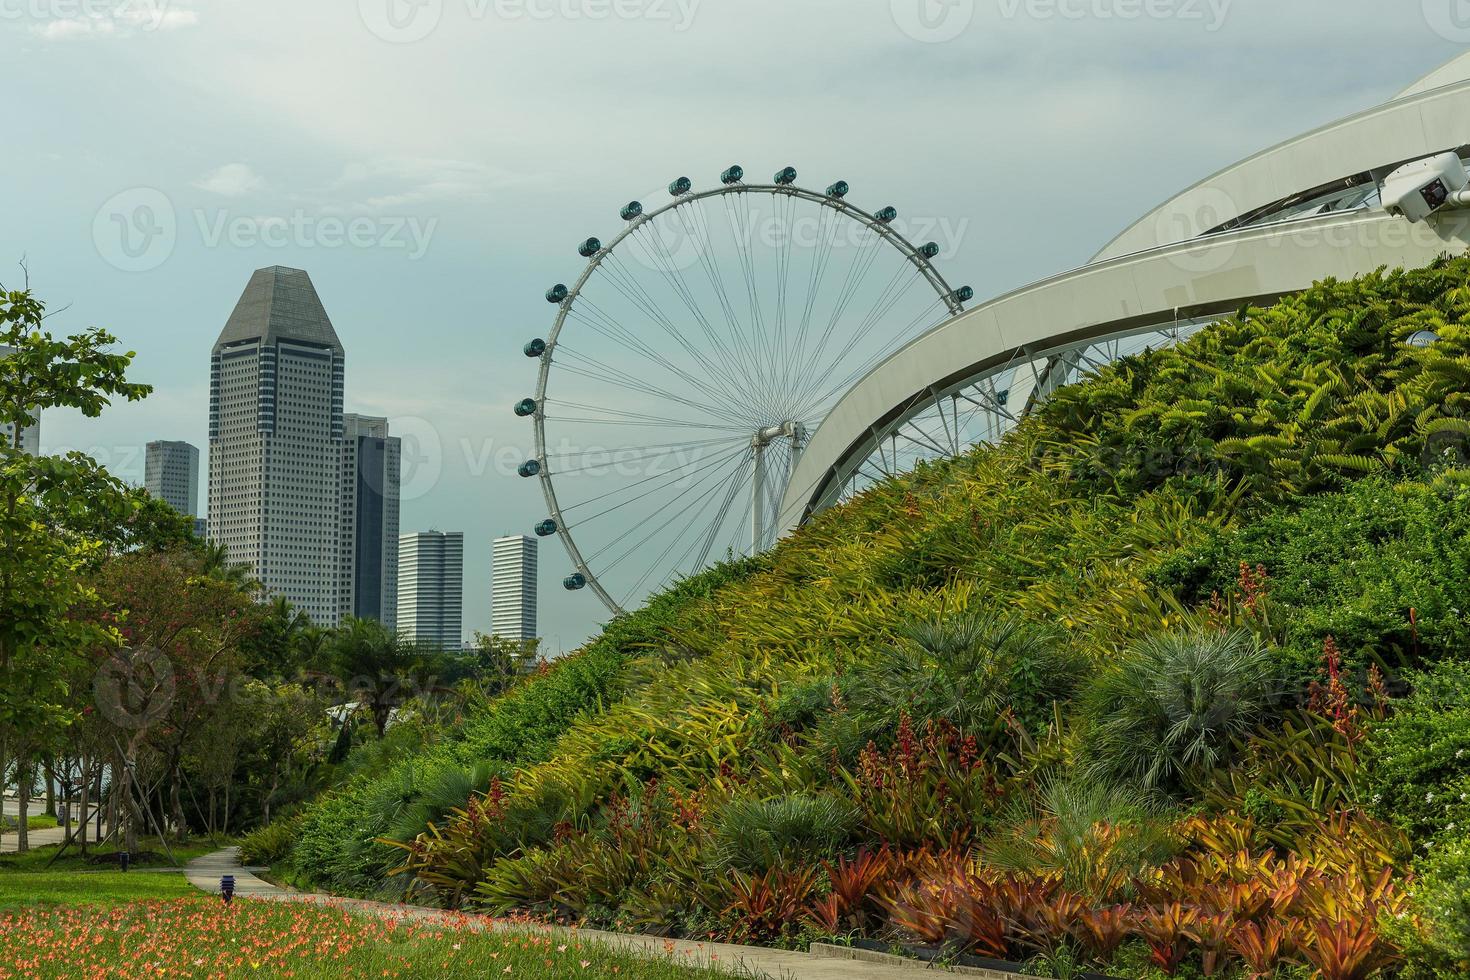 vista del horizonte de la ciudad de singapur foto